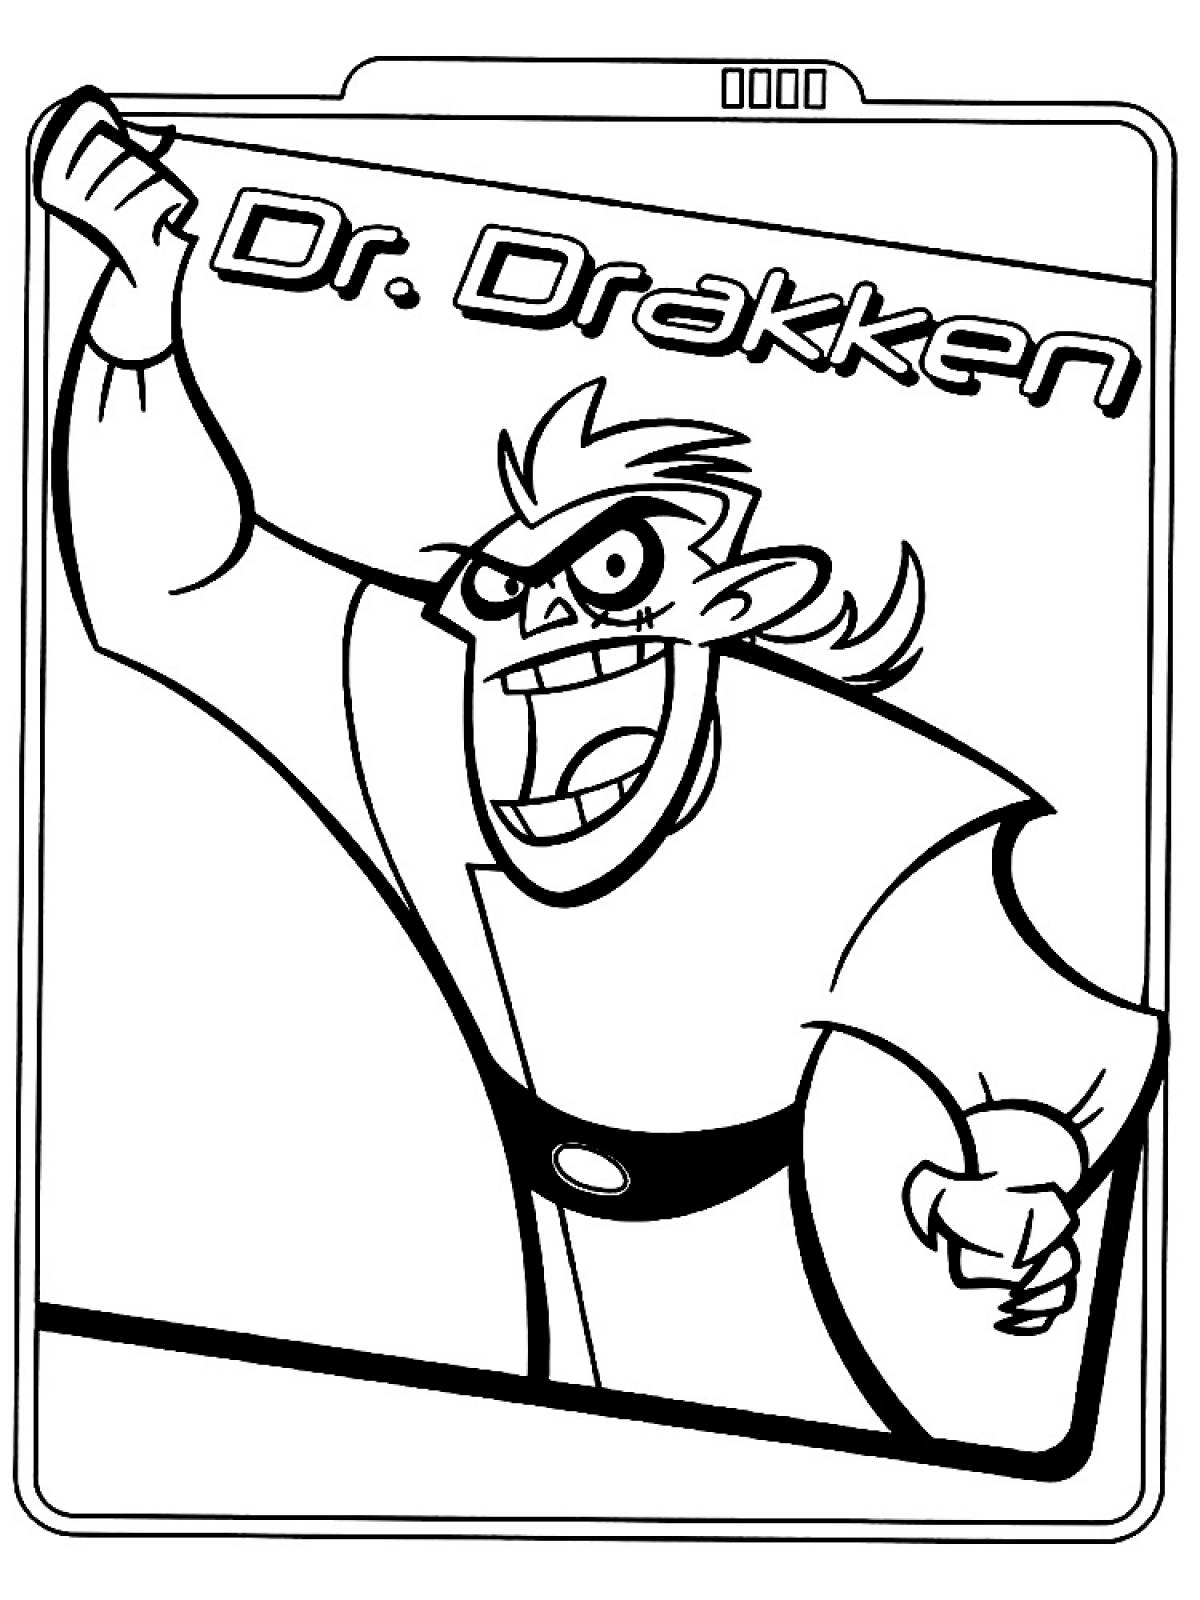 Dr. Draken